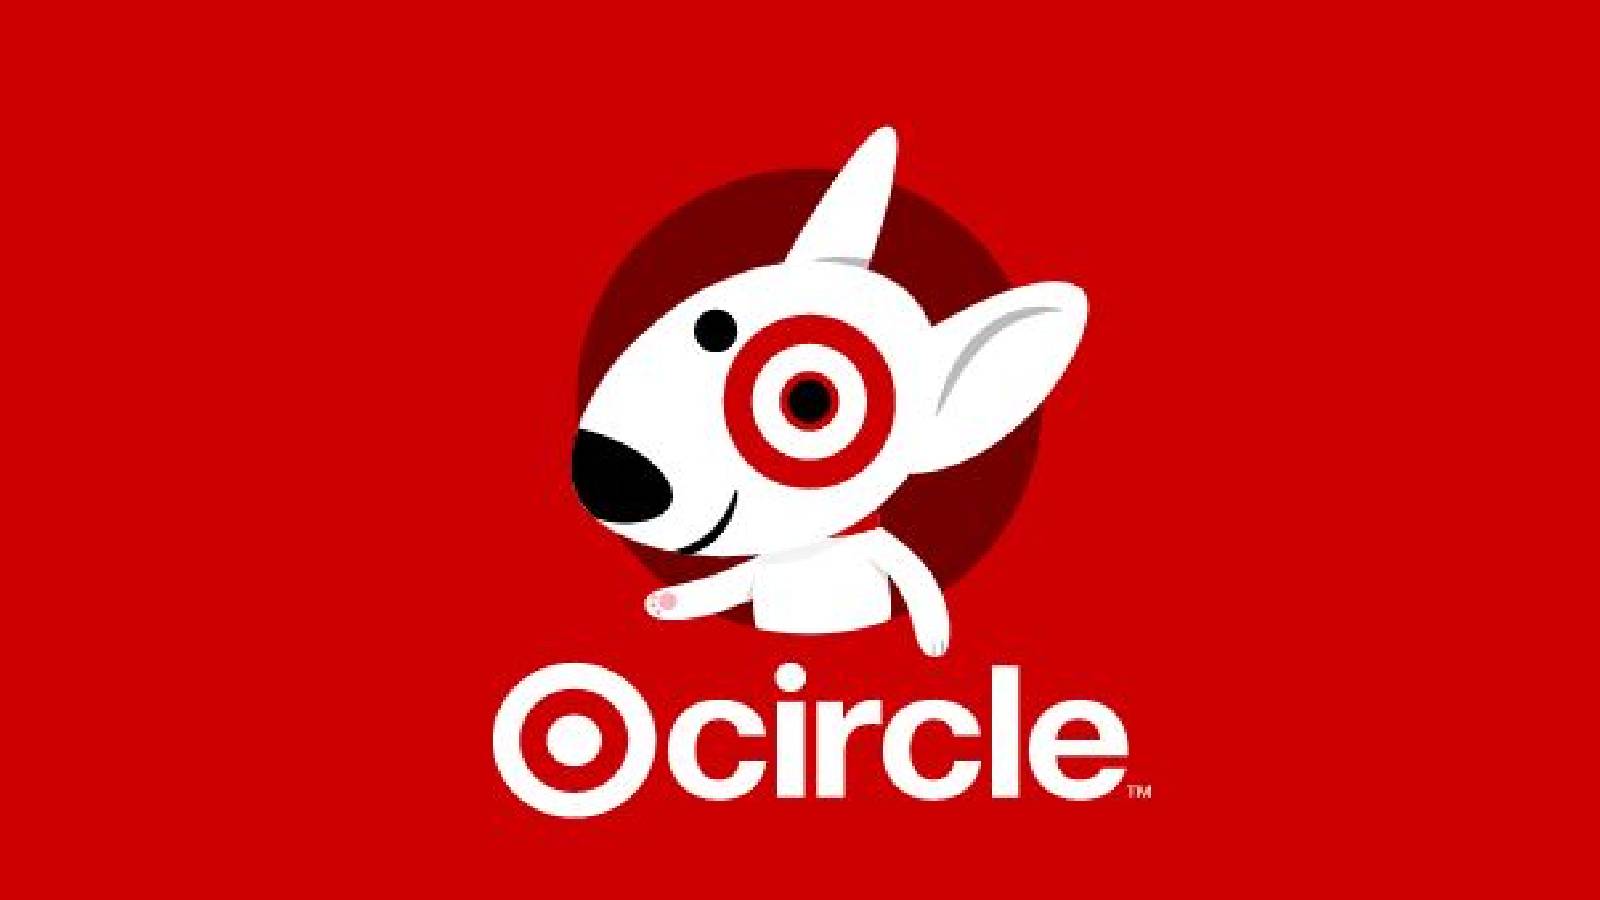 Das Target Circle-Logo – ein Comicbild eines weißen Hundes mit einem roten Ring um eines seiner Augen.  Der Hintergrund ist rot